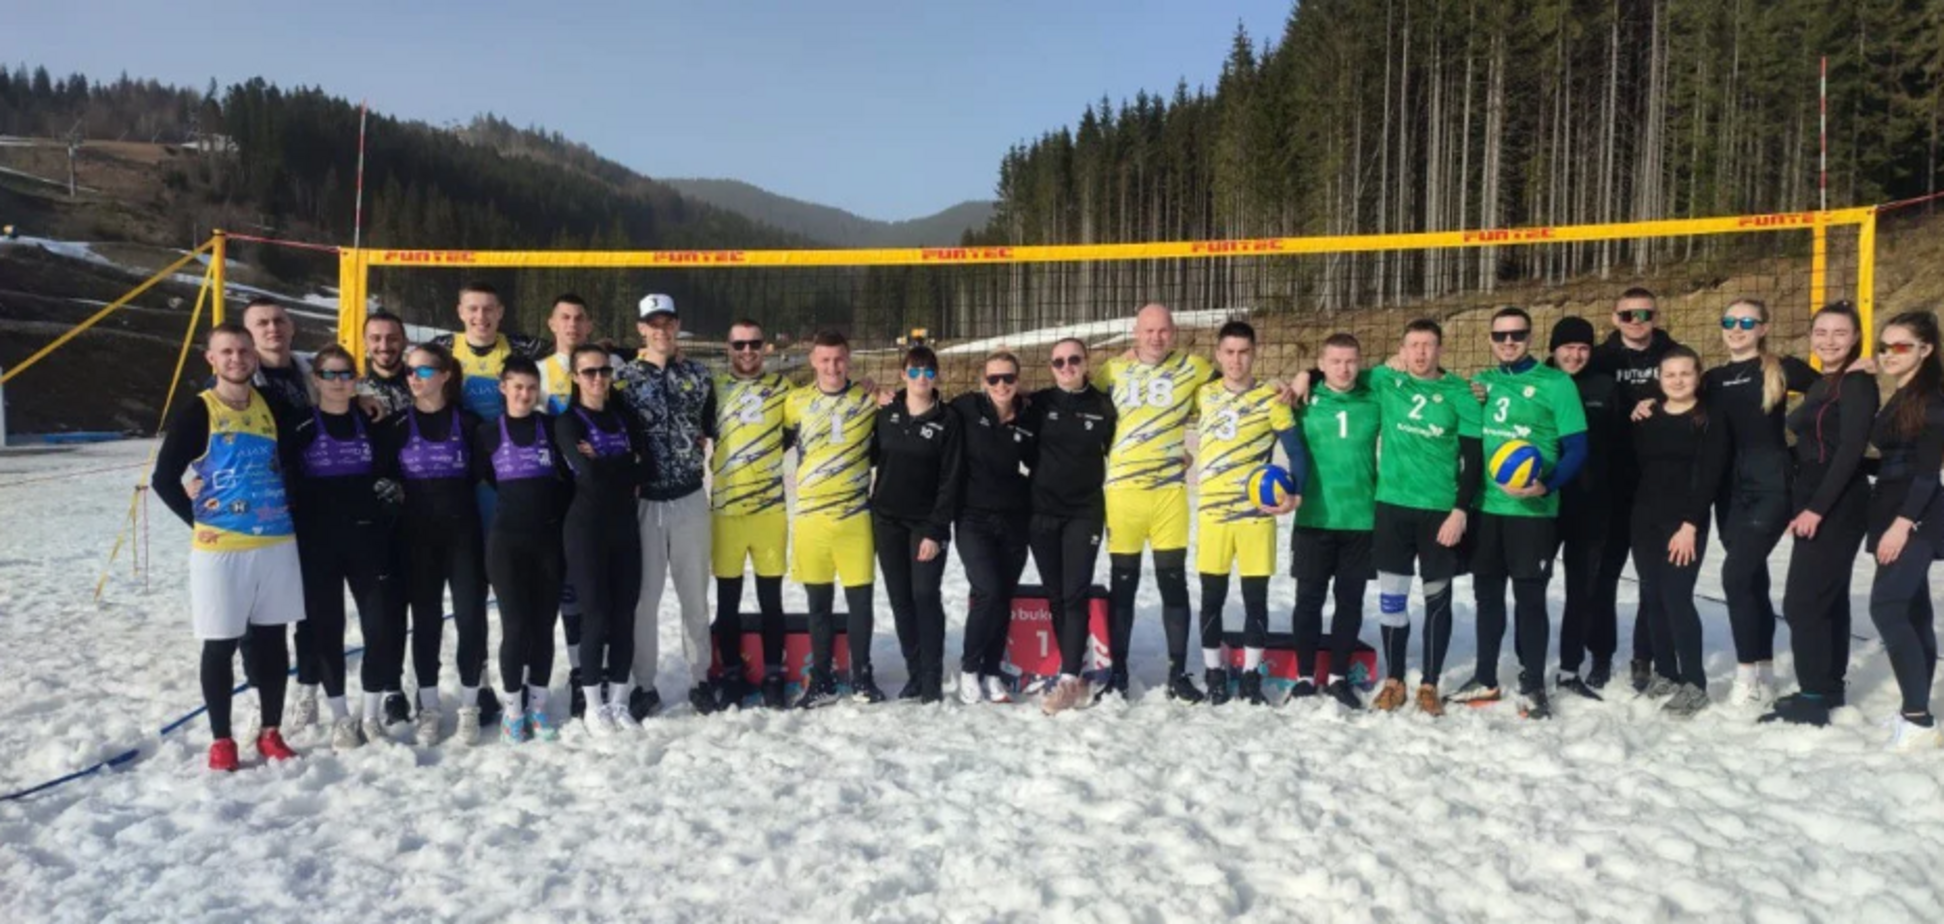 Закарпатские спортсмены добыли в борьбе 'золото' на Чемпионате Украины по волейболу на снегу. Фото и видео